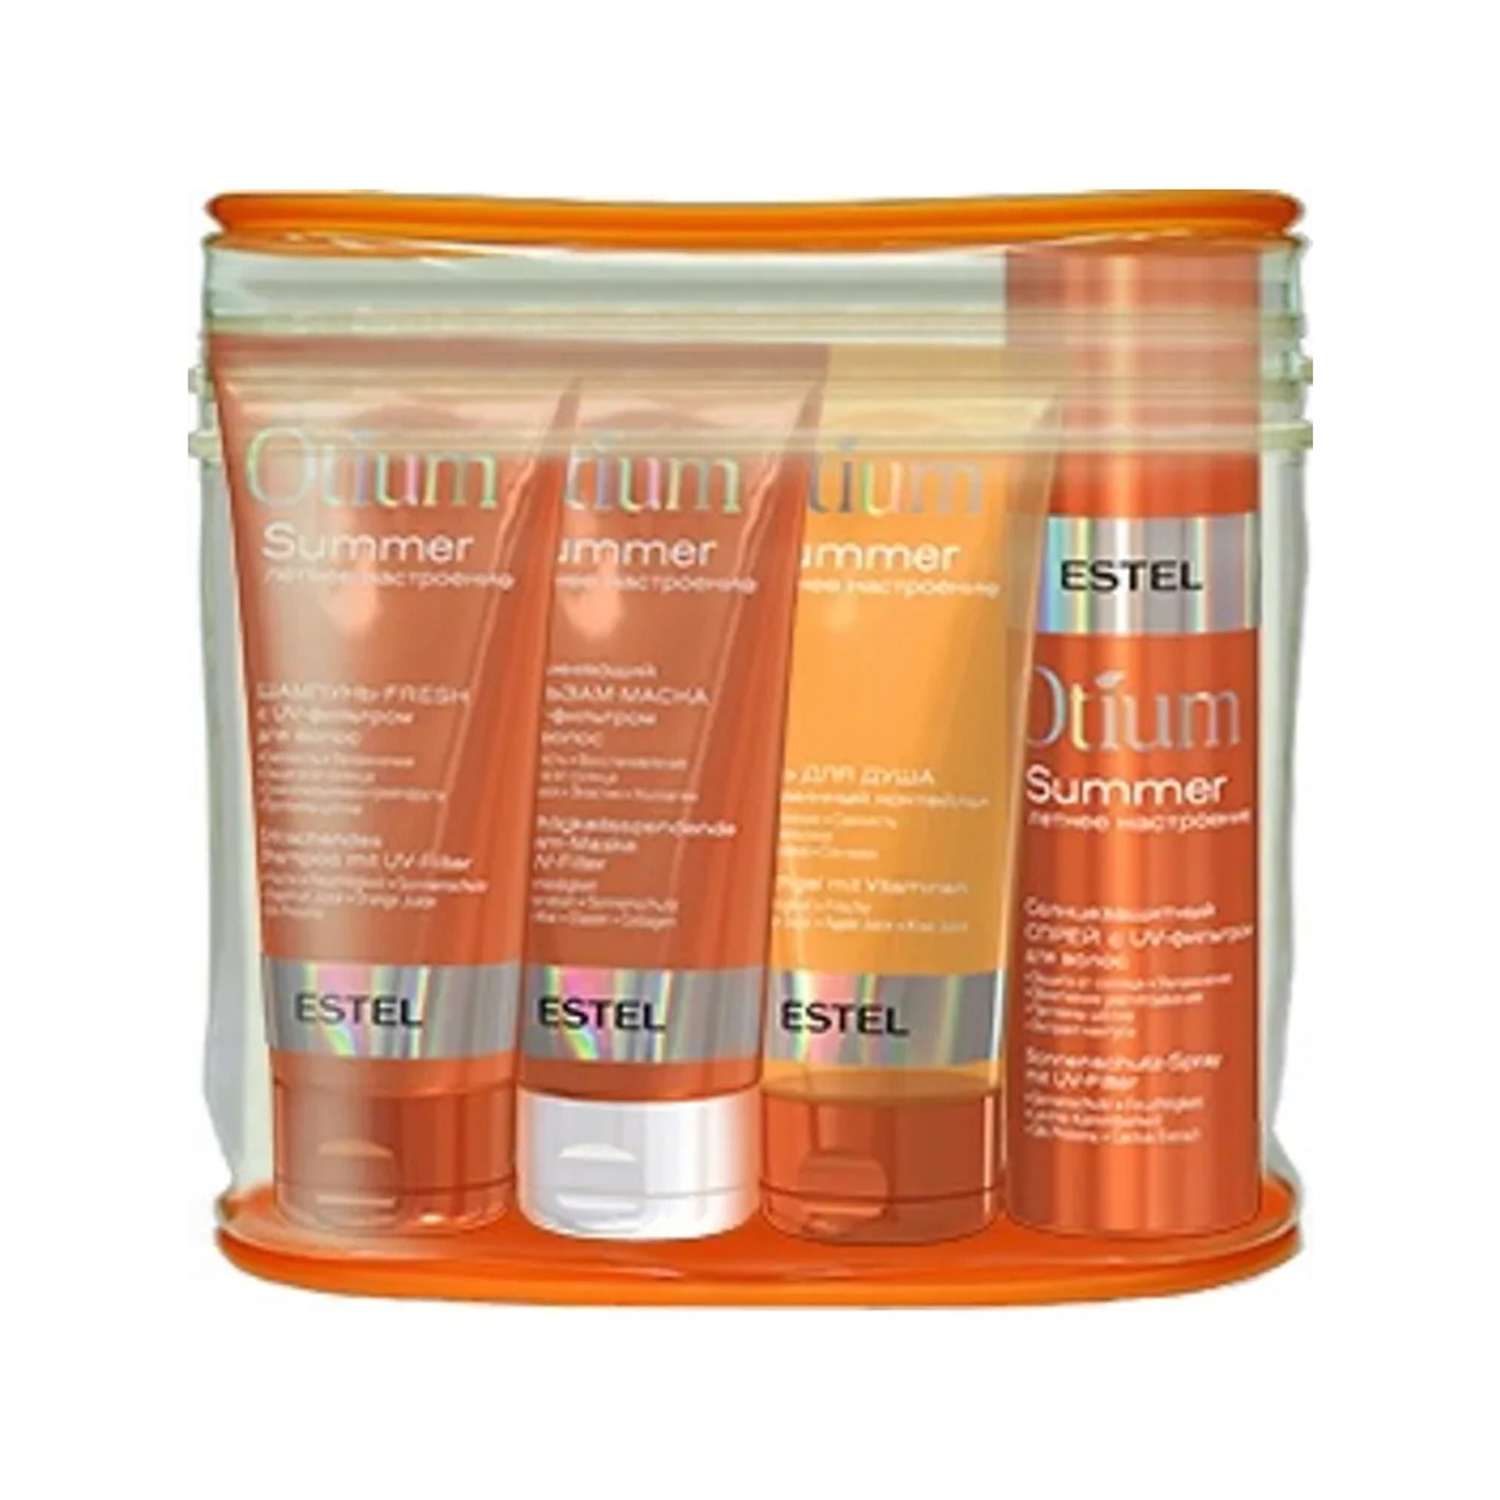 Дорожный набор Estel Professional Otium Summer для волос и тела в косметичке 4*100 мл - фото 1